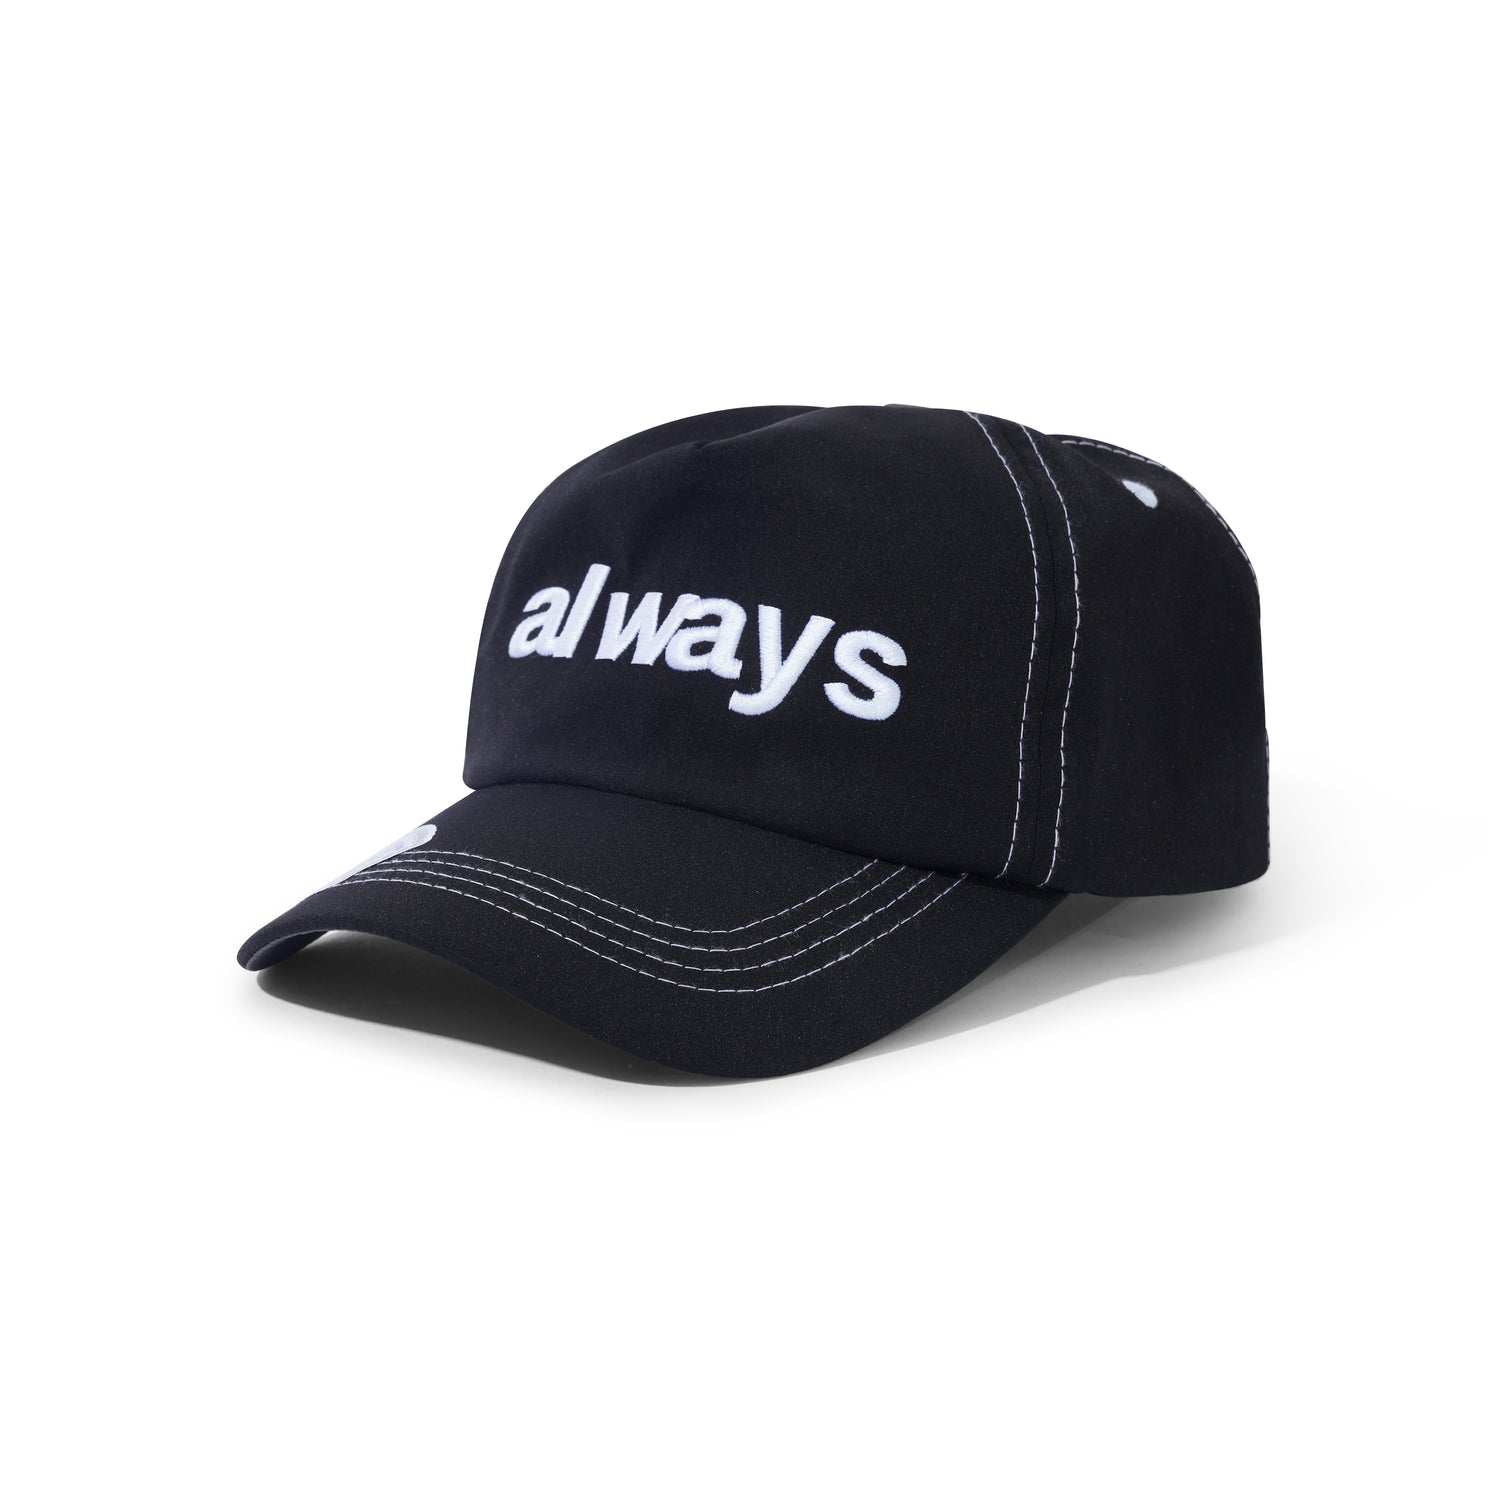 Always Up Hat, Black